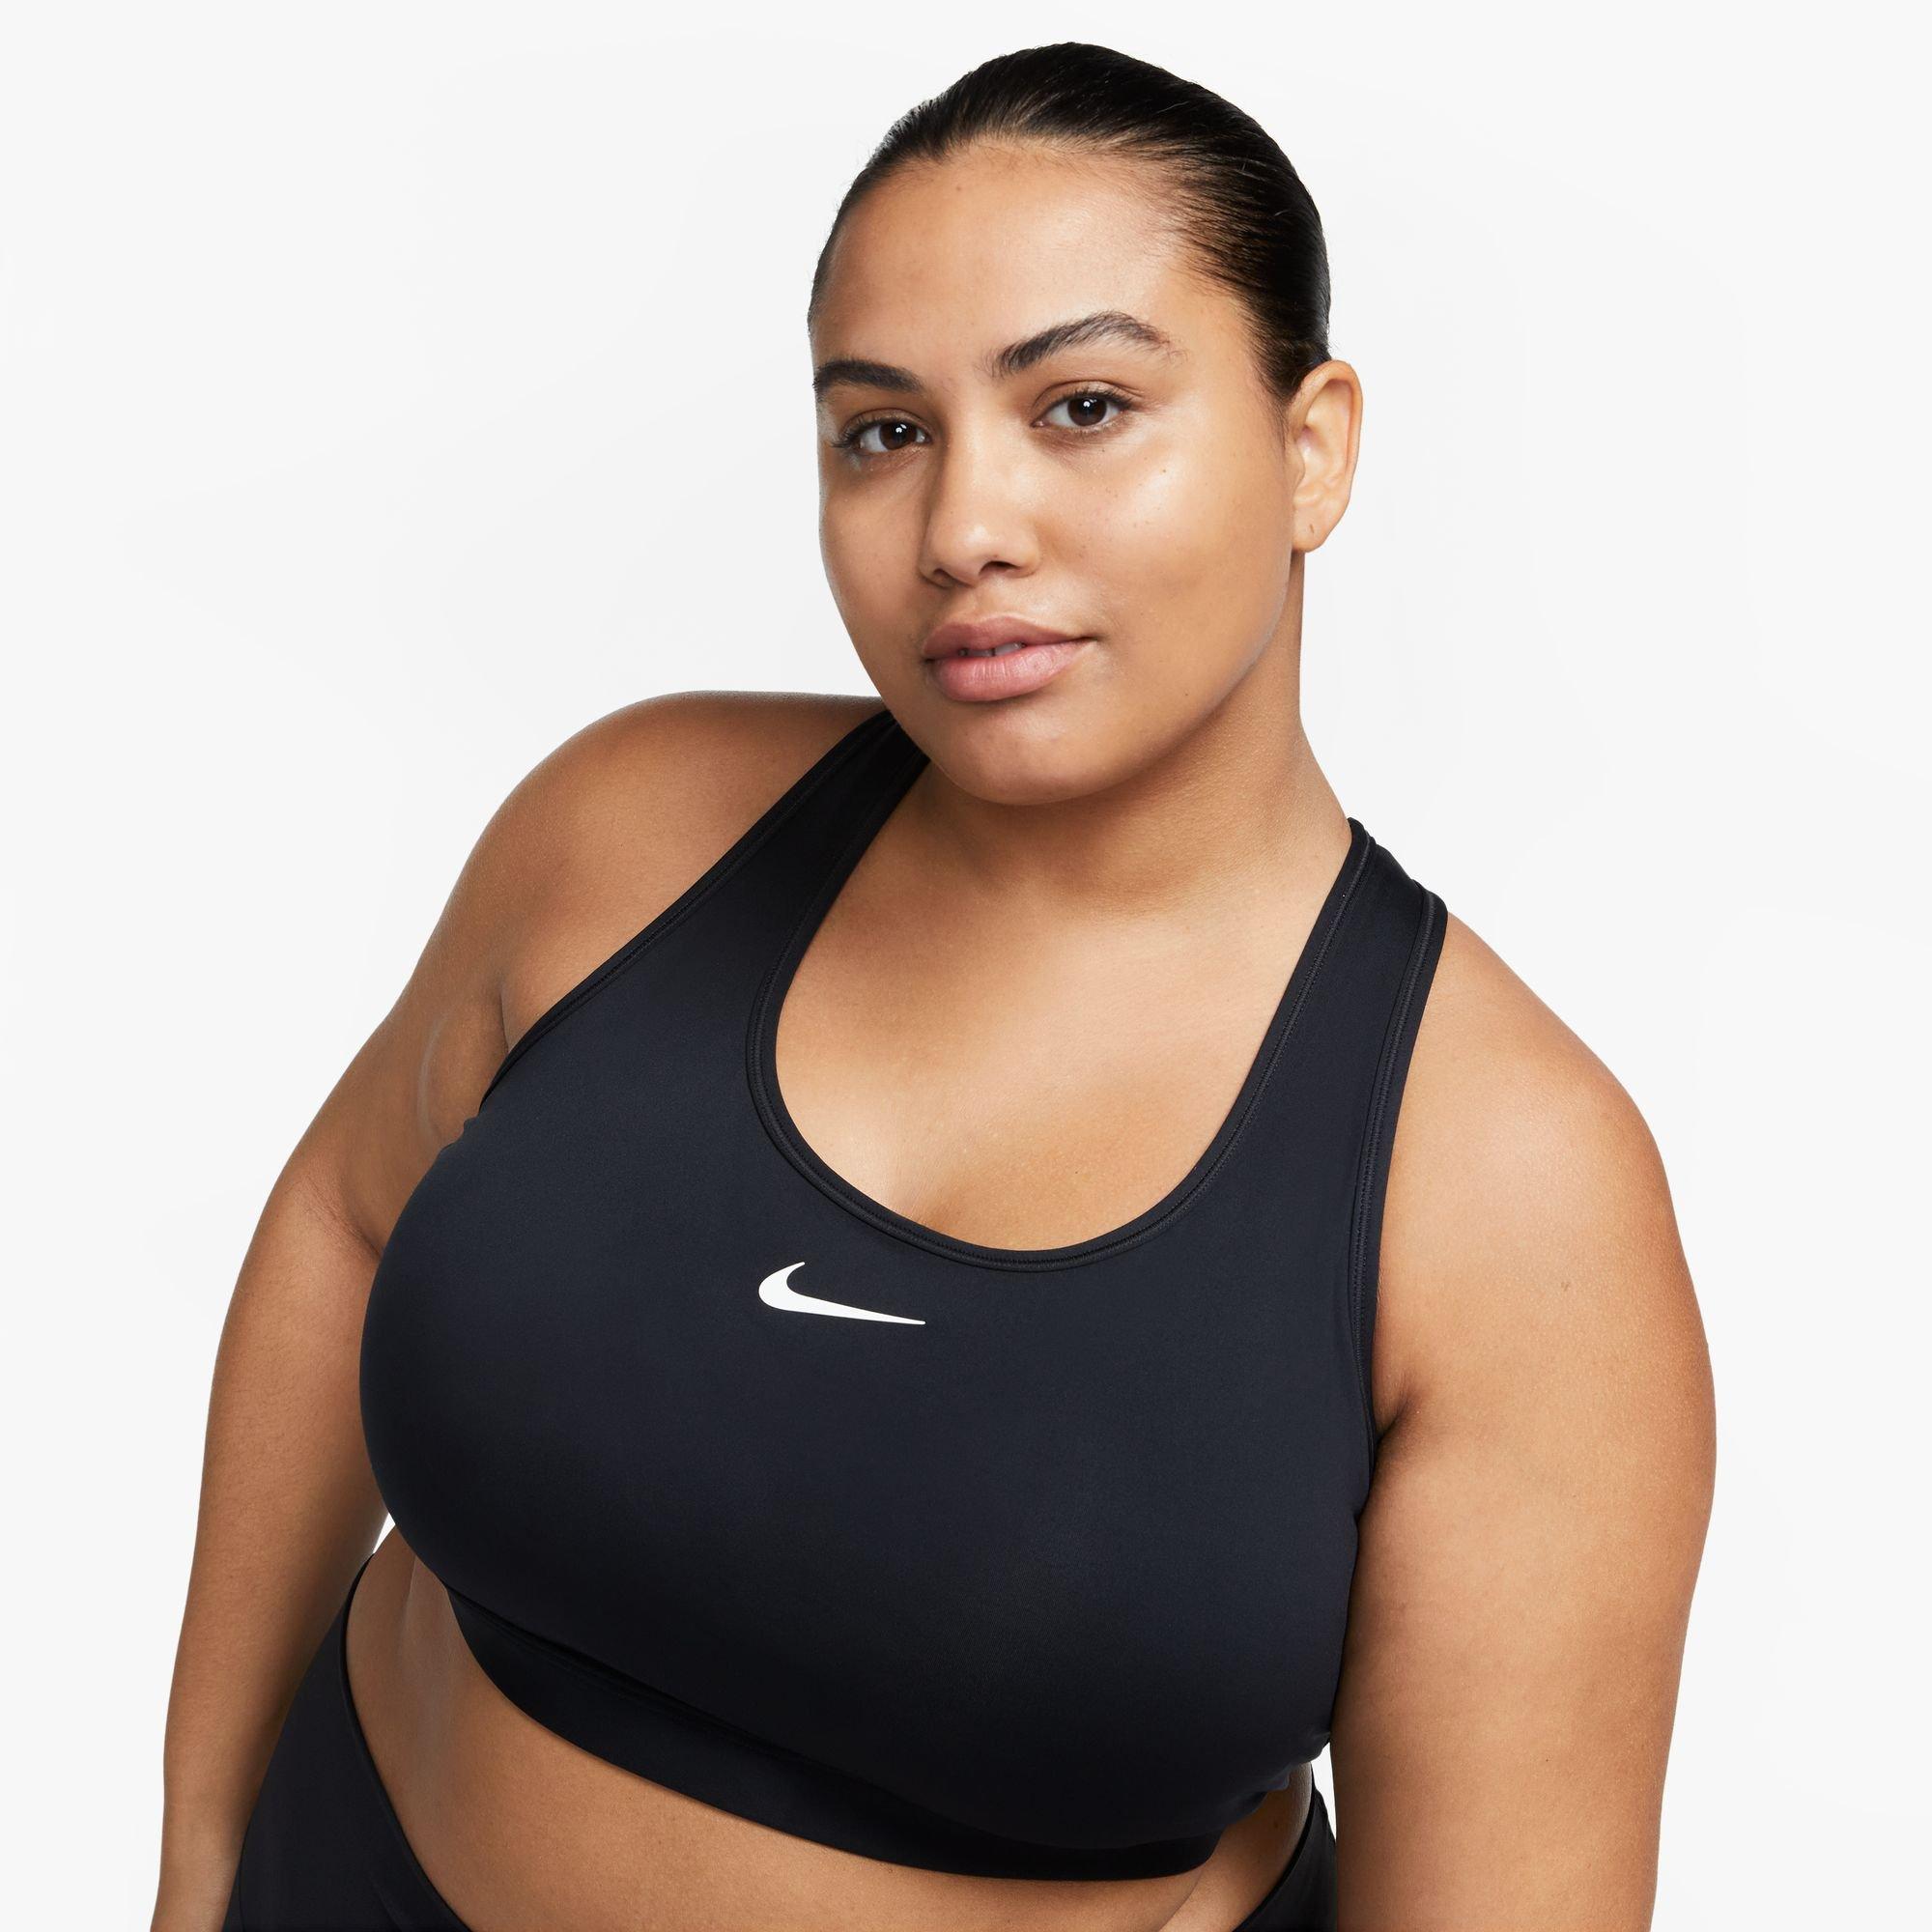 Nike Sports bra DRI-FIT SWOOSH in black